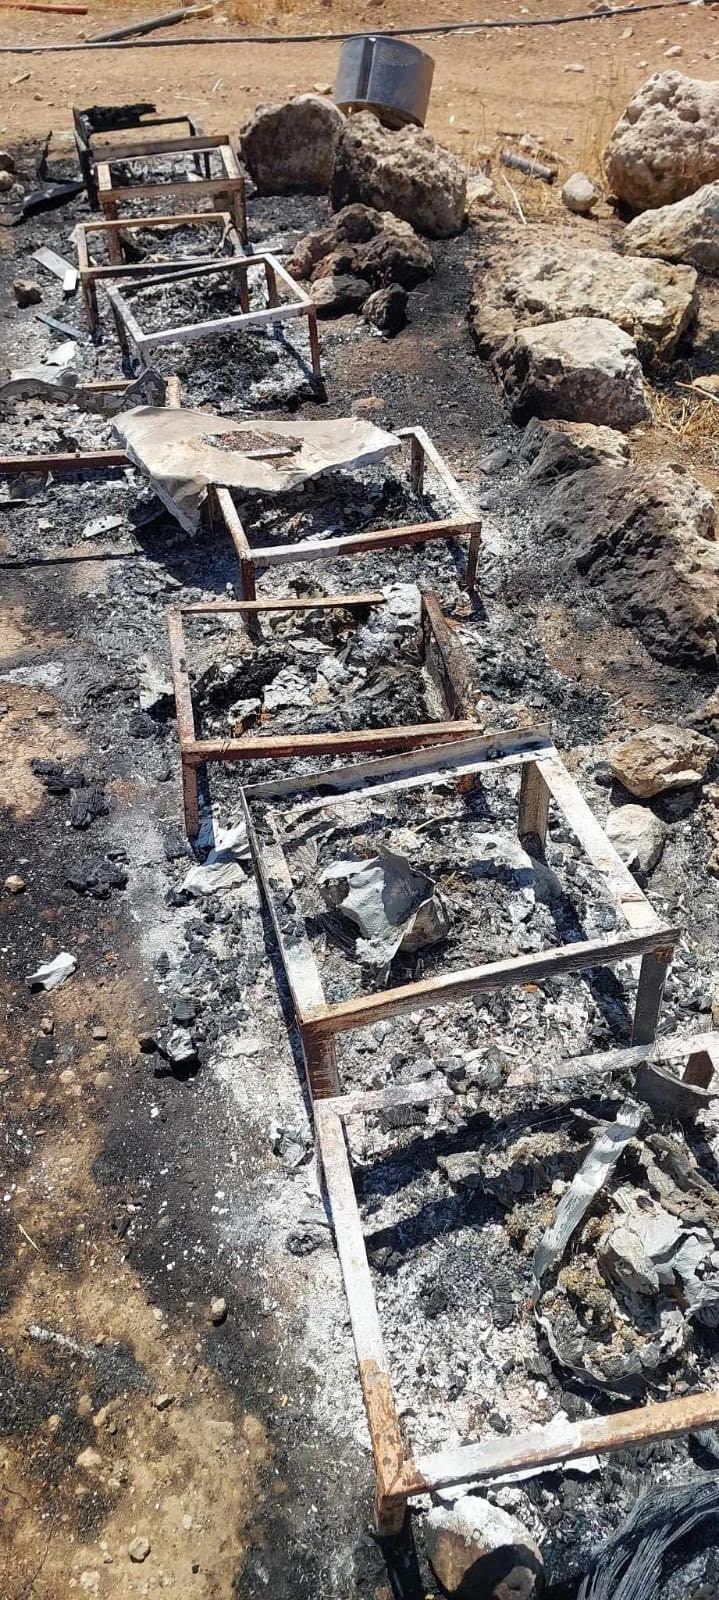 Les ruches incendiées de la ferme de Salah Awwad